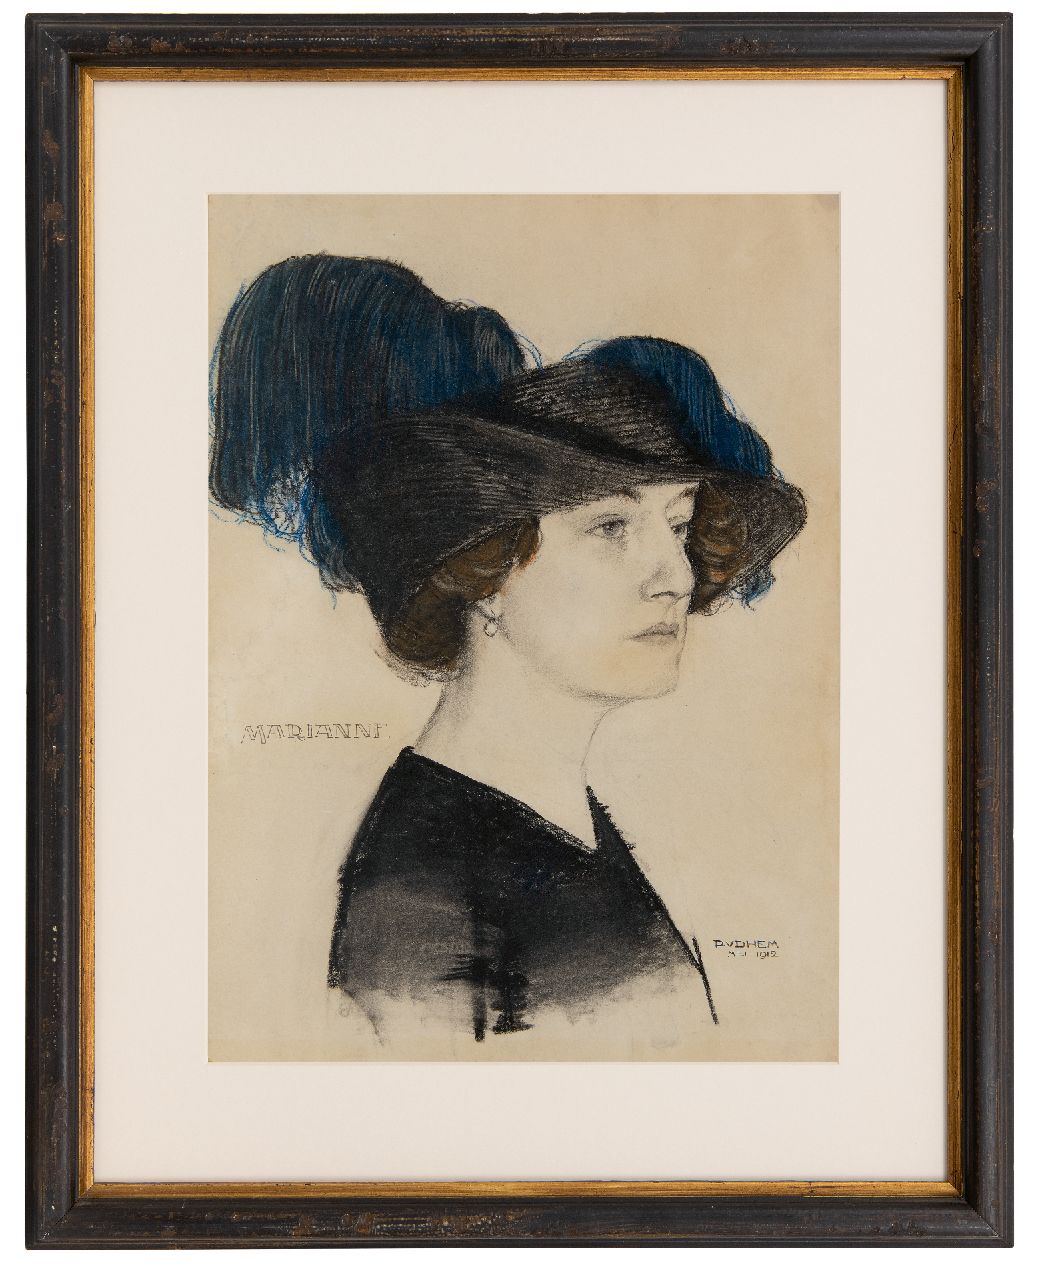 Hem P. van der | Pieter 'Piet' van der Hem, Marianne met modieuze hoed, krijt op papier 54,0 x 39,3 cm, gesigneerd rechtsonder en gedateerd mei 1912